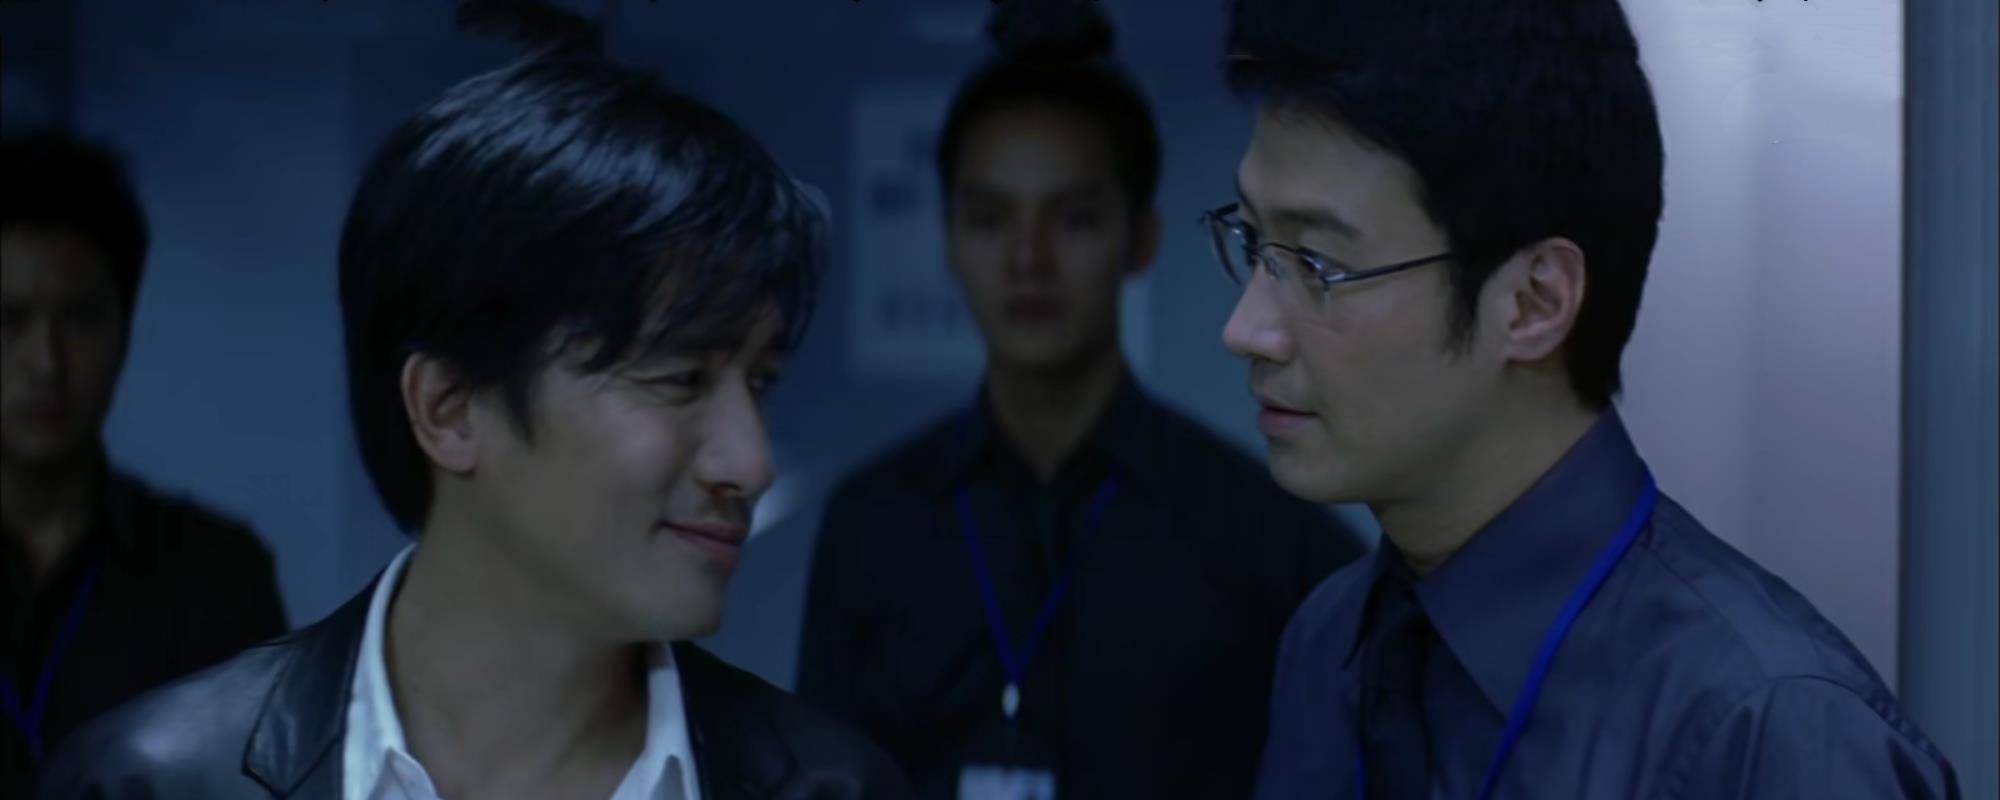 原创当年拍《无间道3》时,刘伟强找到了黎明来出演新角色